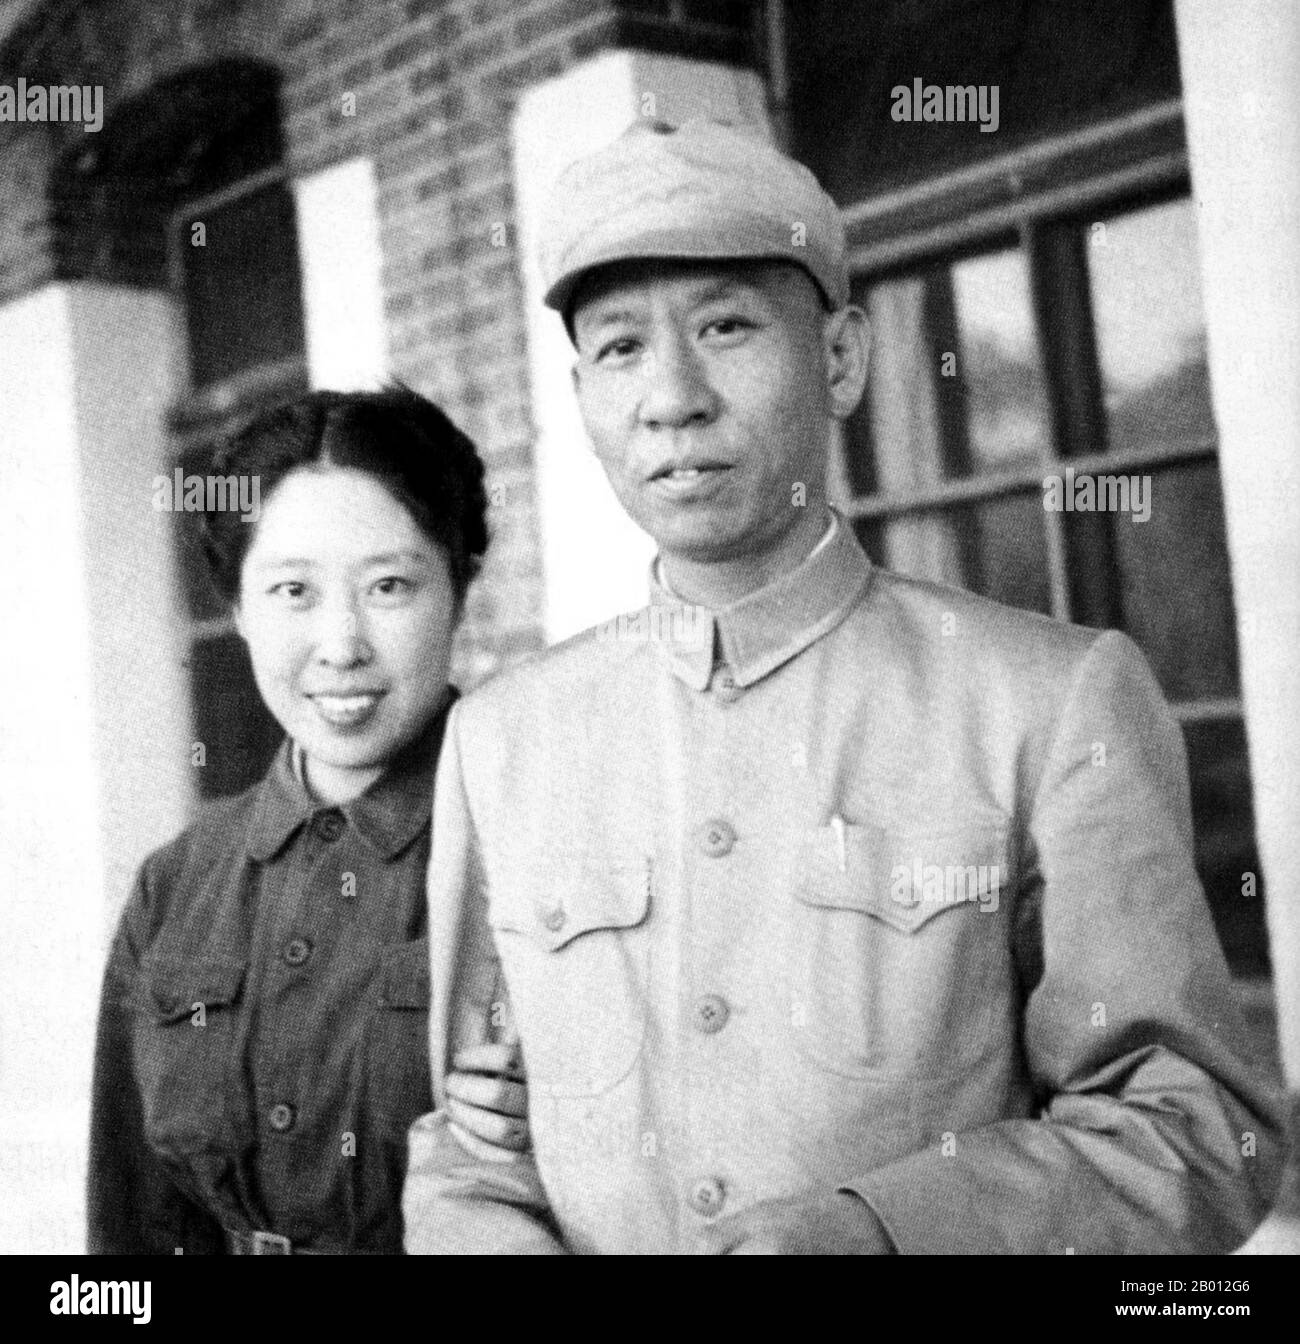 Cina: Liu Shaoqi con la moglie Wang Guangmei, c. Liu Shaoqi (Liu Shao-ch'i, 24 novembre 1898 – 1969 novembre 12) è stato un . 1949 Dal 27 aprile 1959 al 31 ottobre 1968 è stato presidente della Repubblica popolare cinese, capo di Stato cinese, durante il quale ha attuato politiche di ricostruzione economica in Cina. Cadde di favore negli anni Sessanta successivi durante la Rivoluzione Culturale a causa dei suoi punti di vista percepiti di 'destra' e, viene teorizzato, perché Mao considerava Liu come una minaccia al suo potere. Fu torturato a morte nel 1969. Foto Stock